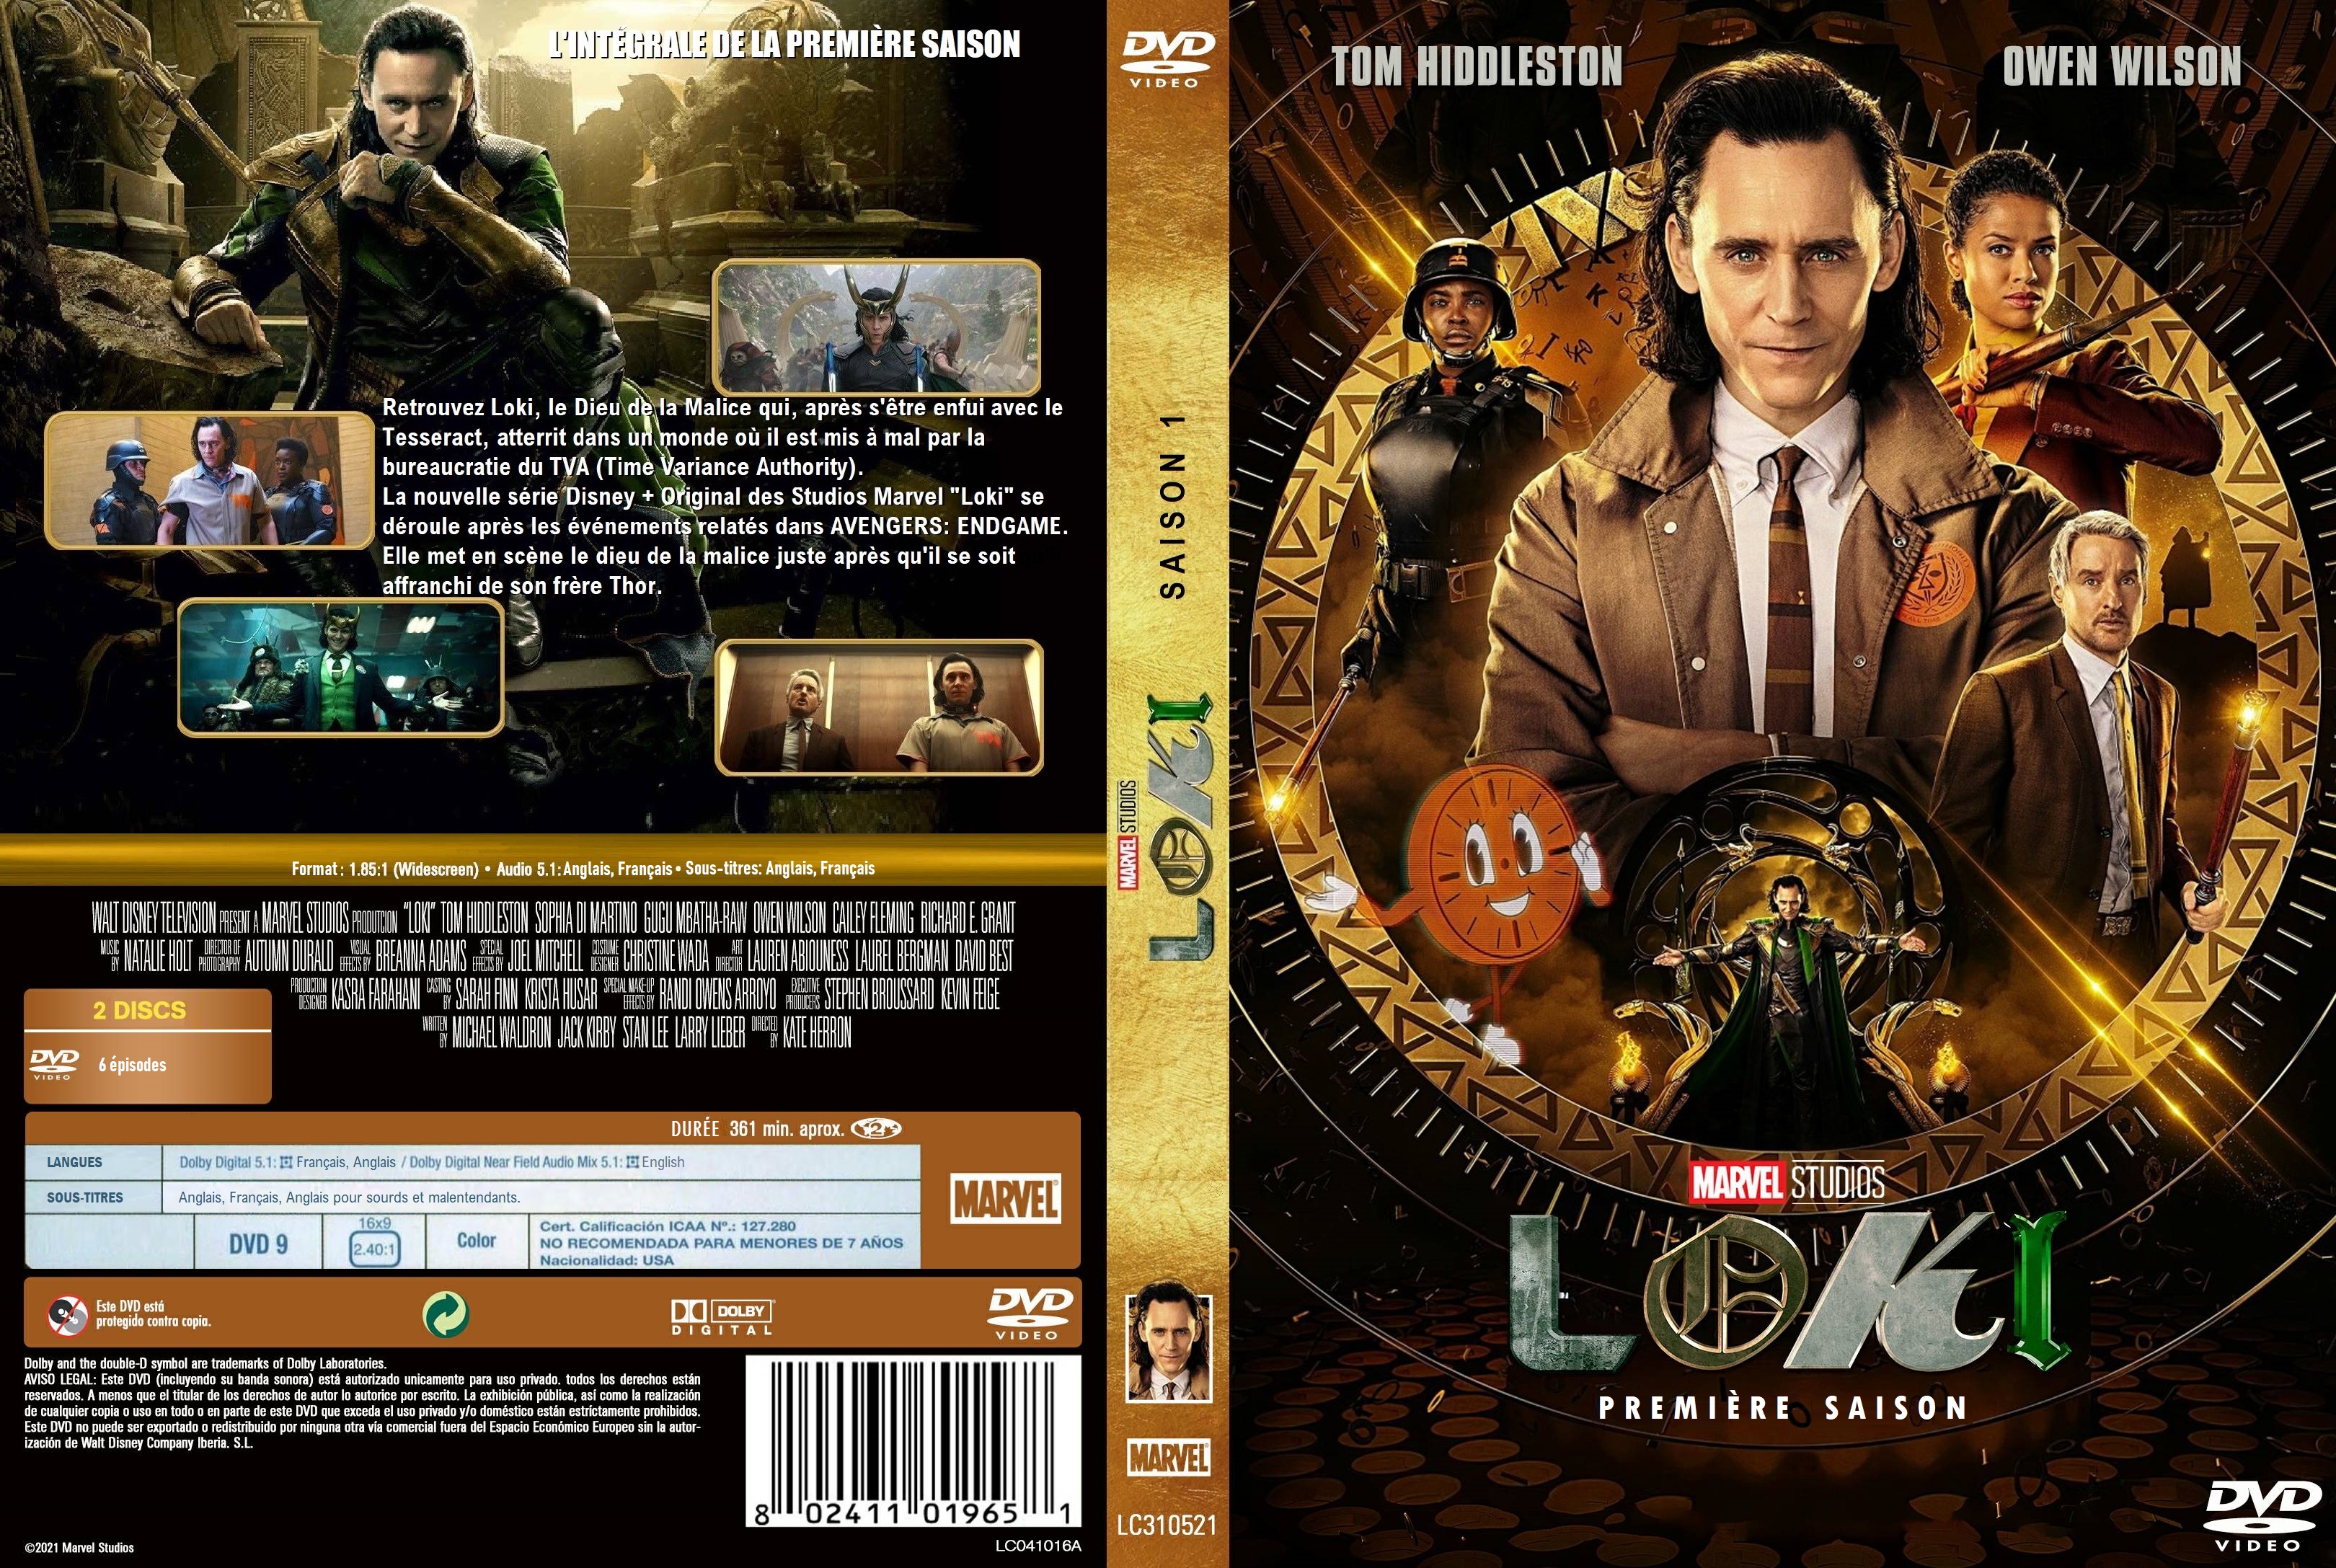 Jaquette DVD de Loki Saison 1 custom - Cinéma Passion